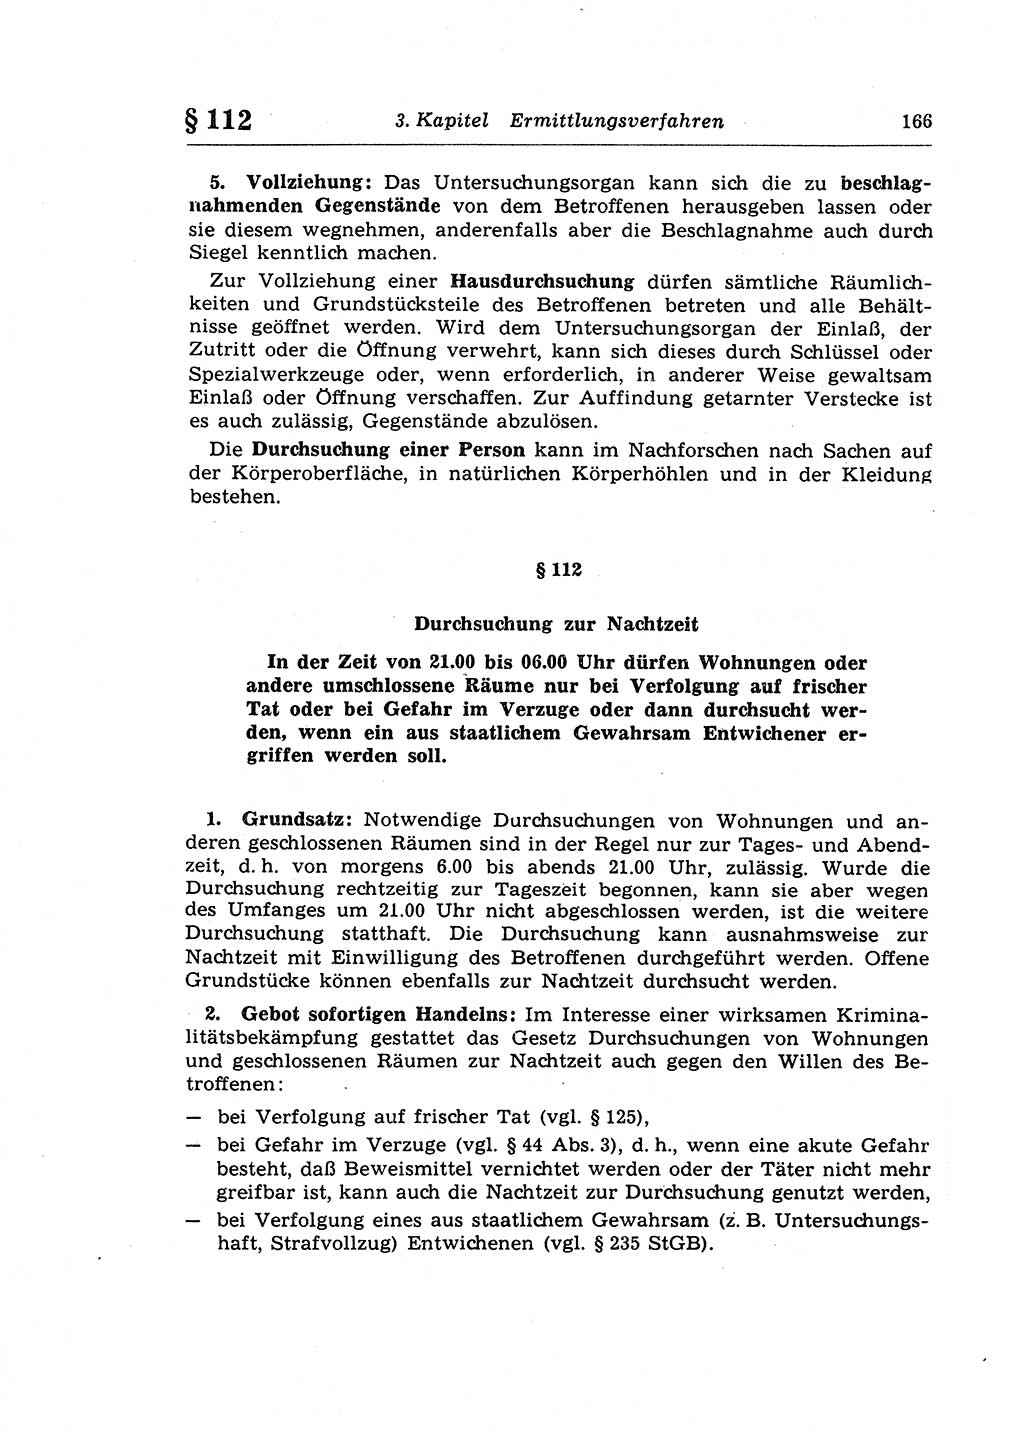 Strafprozeßrecht der DDR (Deutsche Demokratische Republik), Lehrkommentar zur Strafprozeßordnung (StPO) 1968, Seite 166 (Strafprozeßr. DDR Lehrkomm. StPO 19688, S. 166)